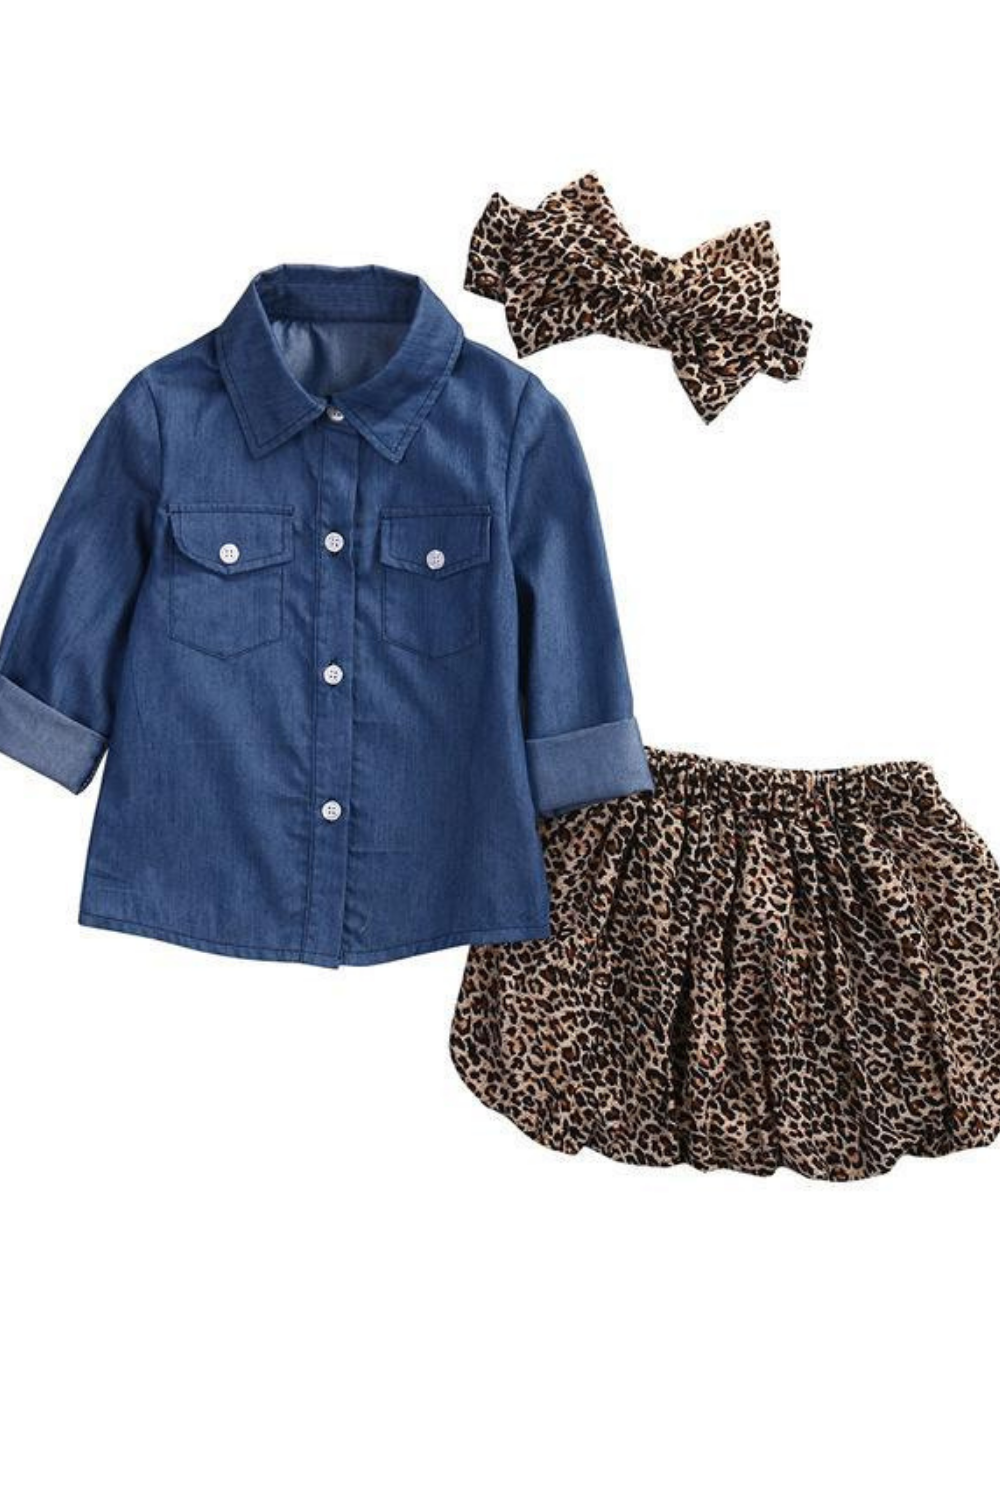 ras Scheiden middernacht 3-piece denim shirt Leopard Set Baby Girl -